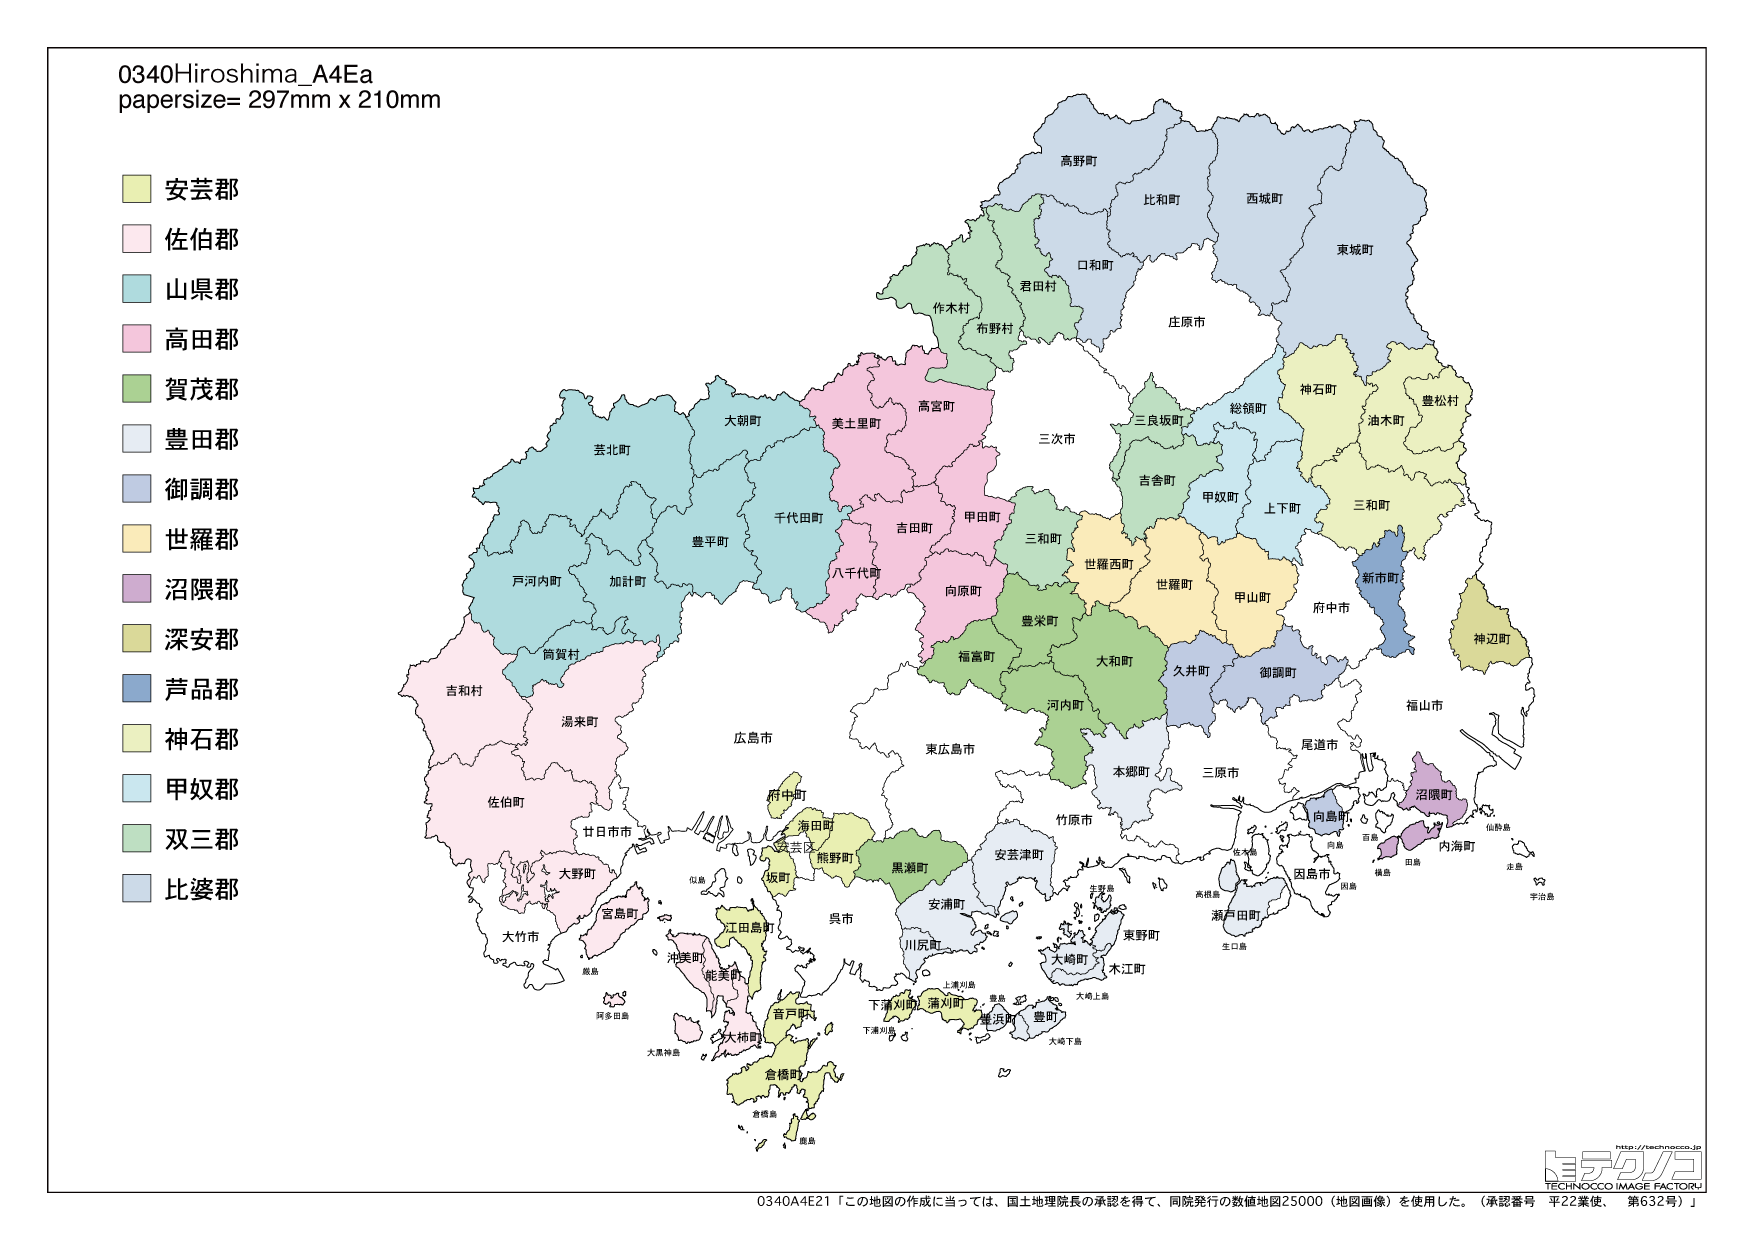 広島県の白地図と市町村の合併情報